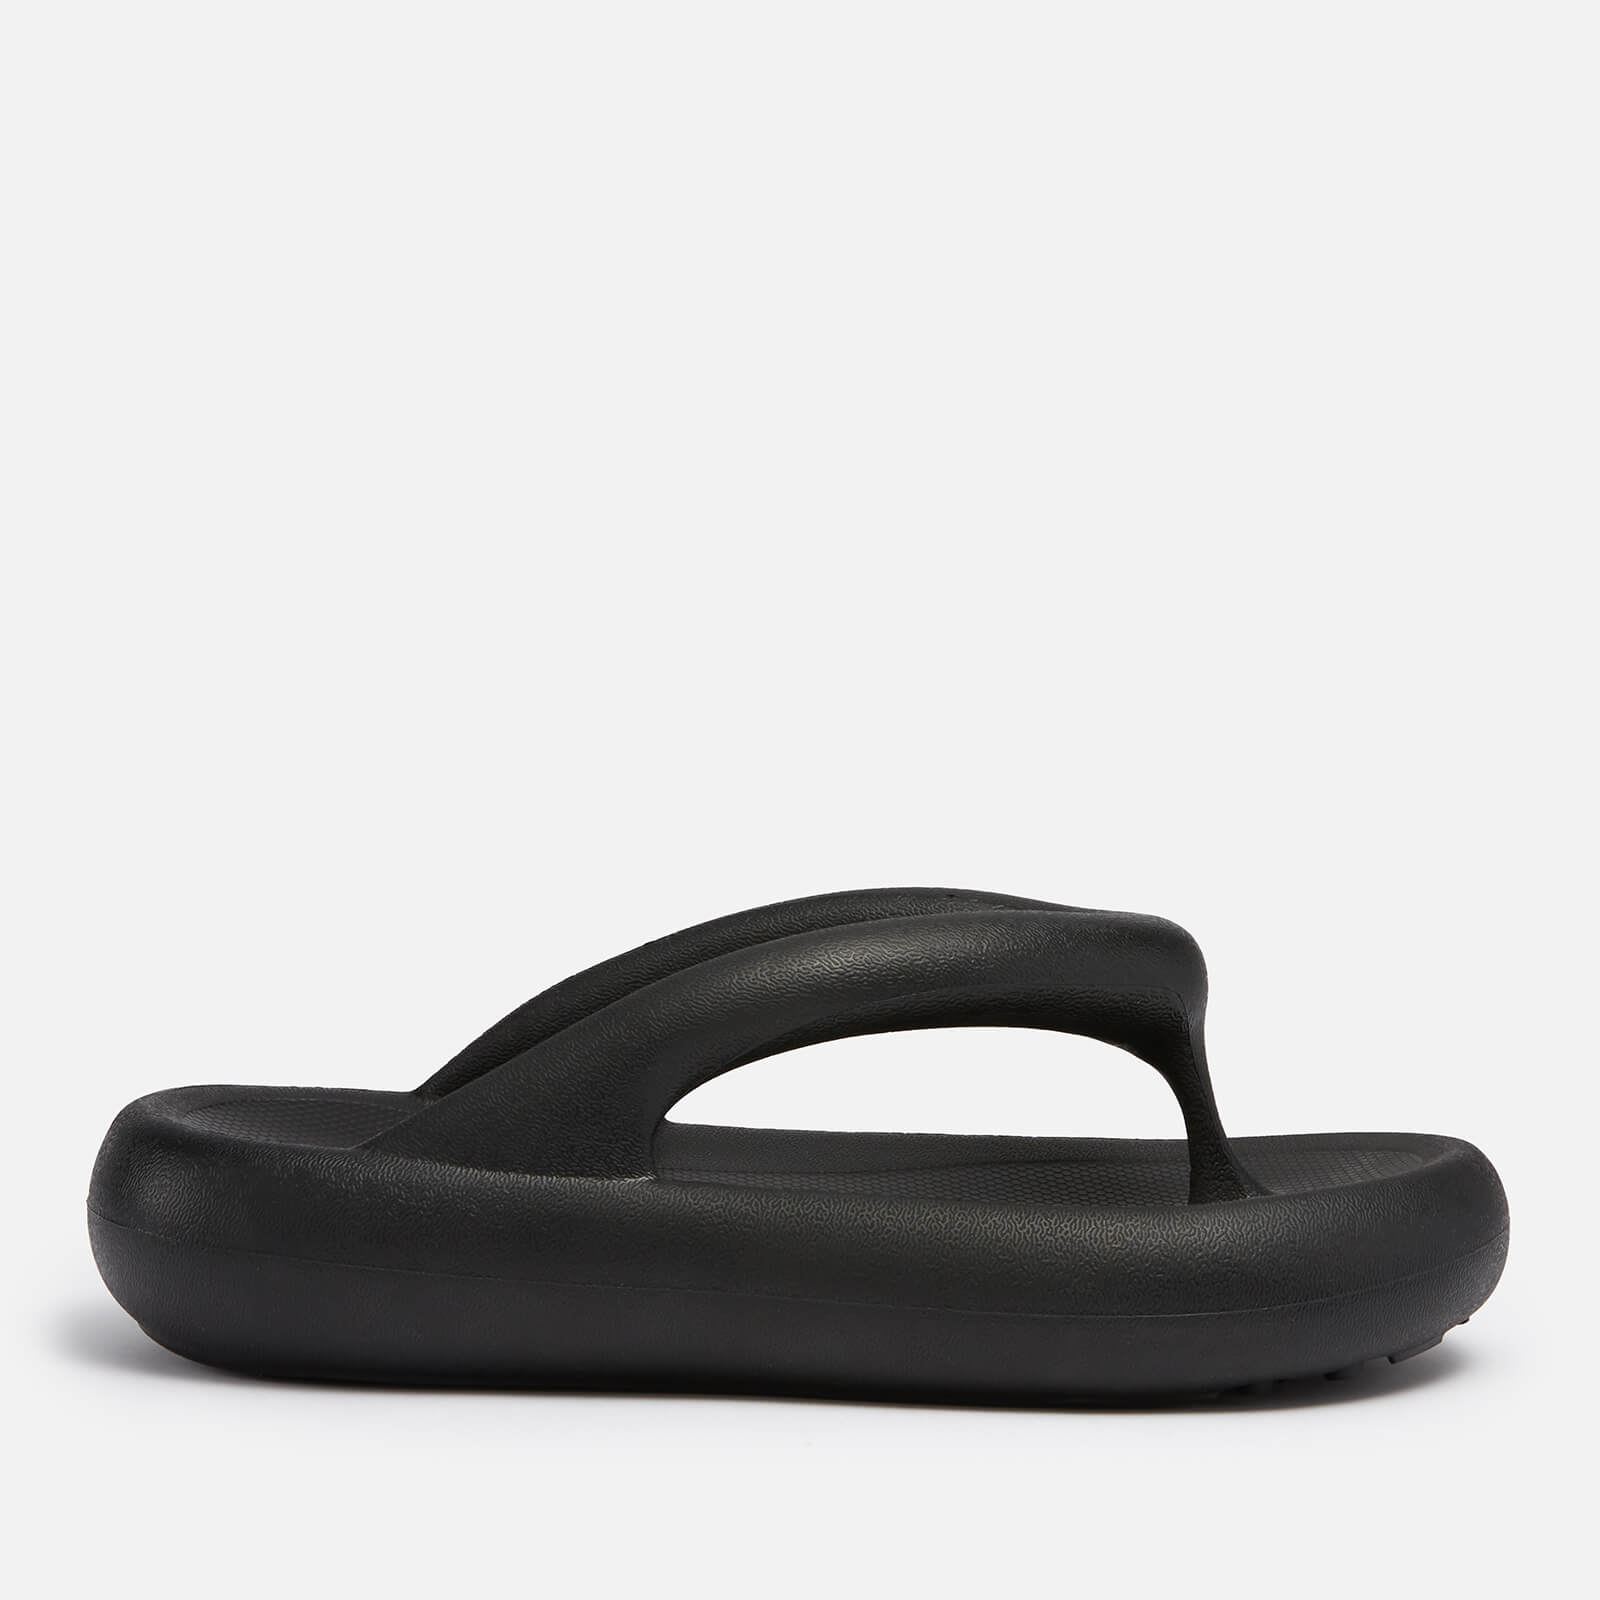 Axel Arigato Women's Delta Toe Post Sandals - Black - EU 35/36